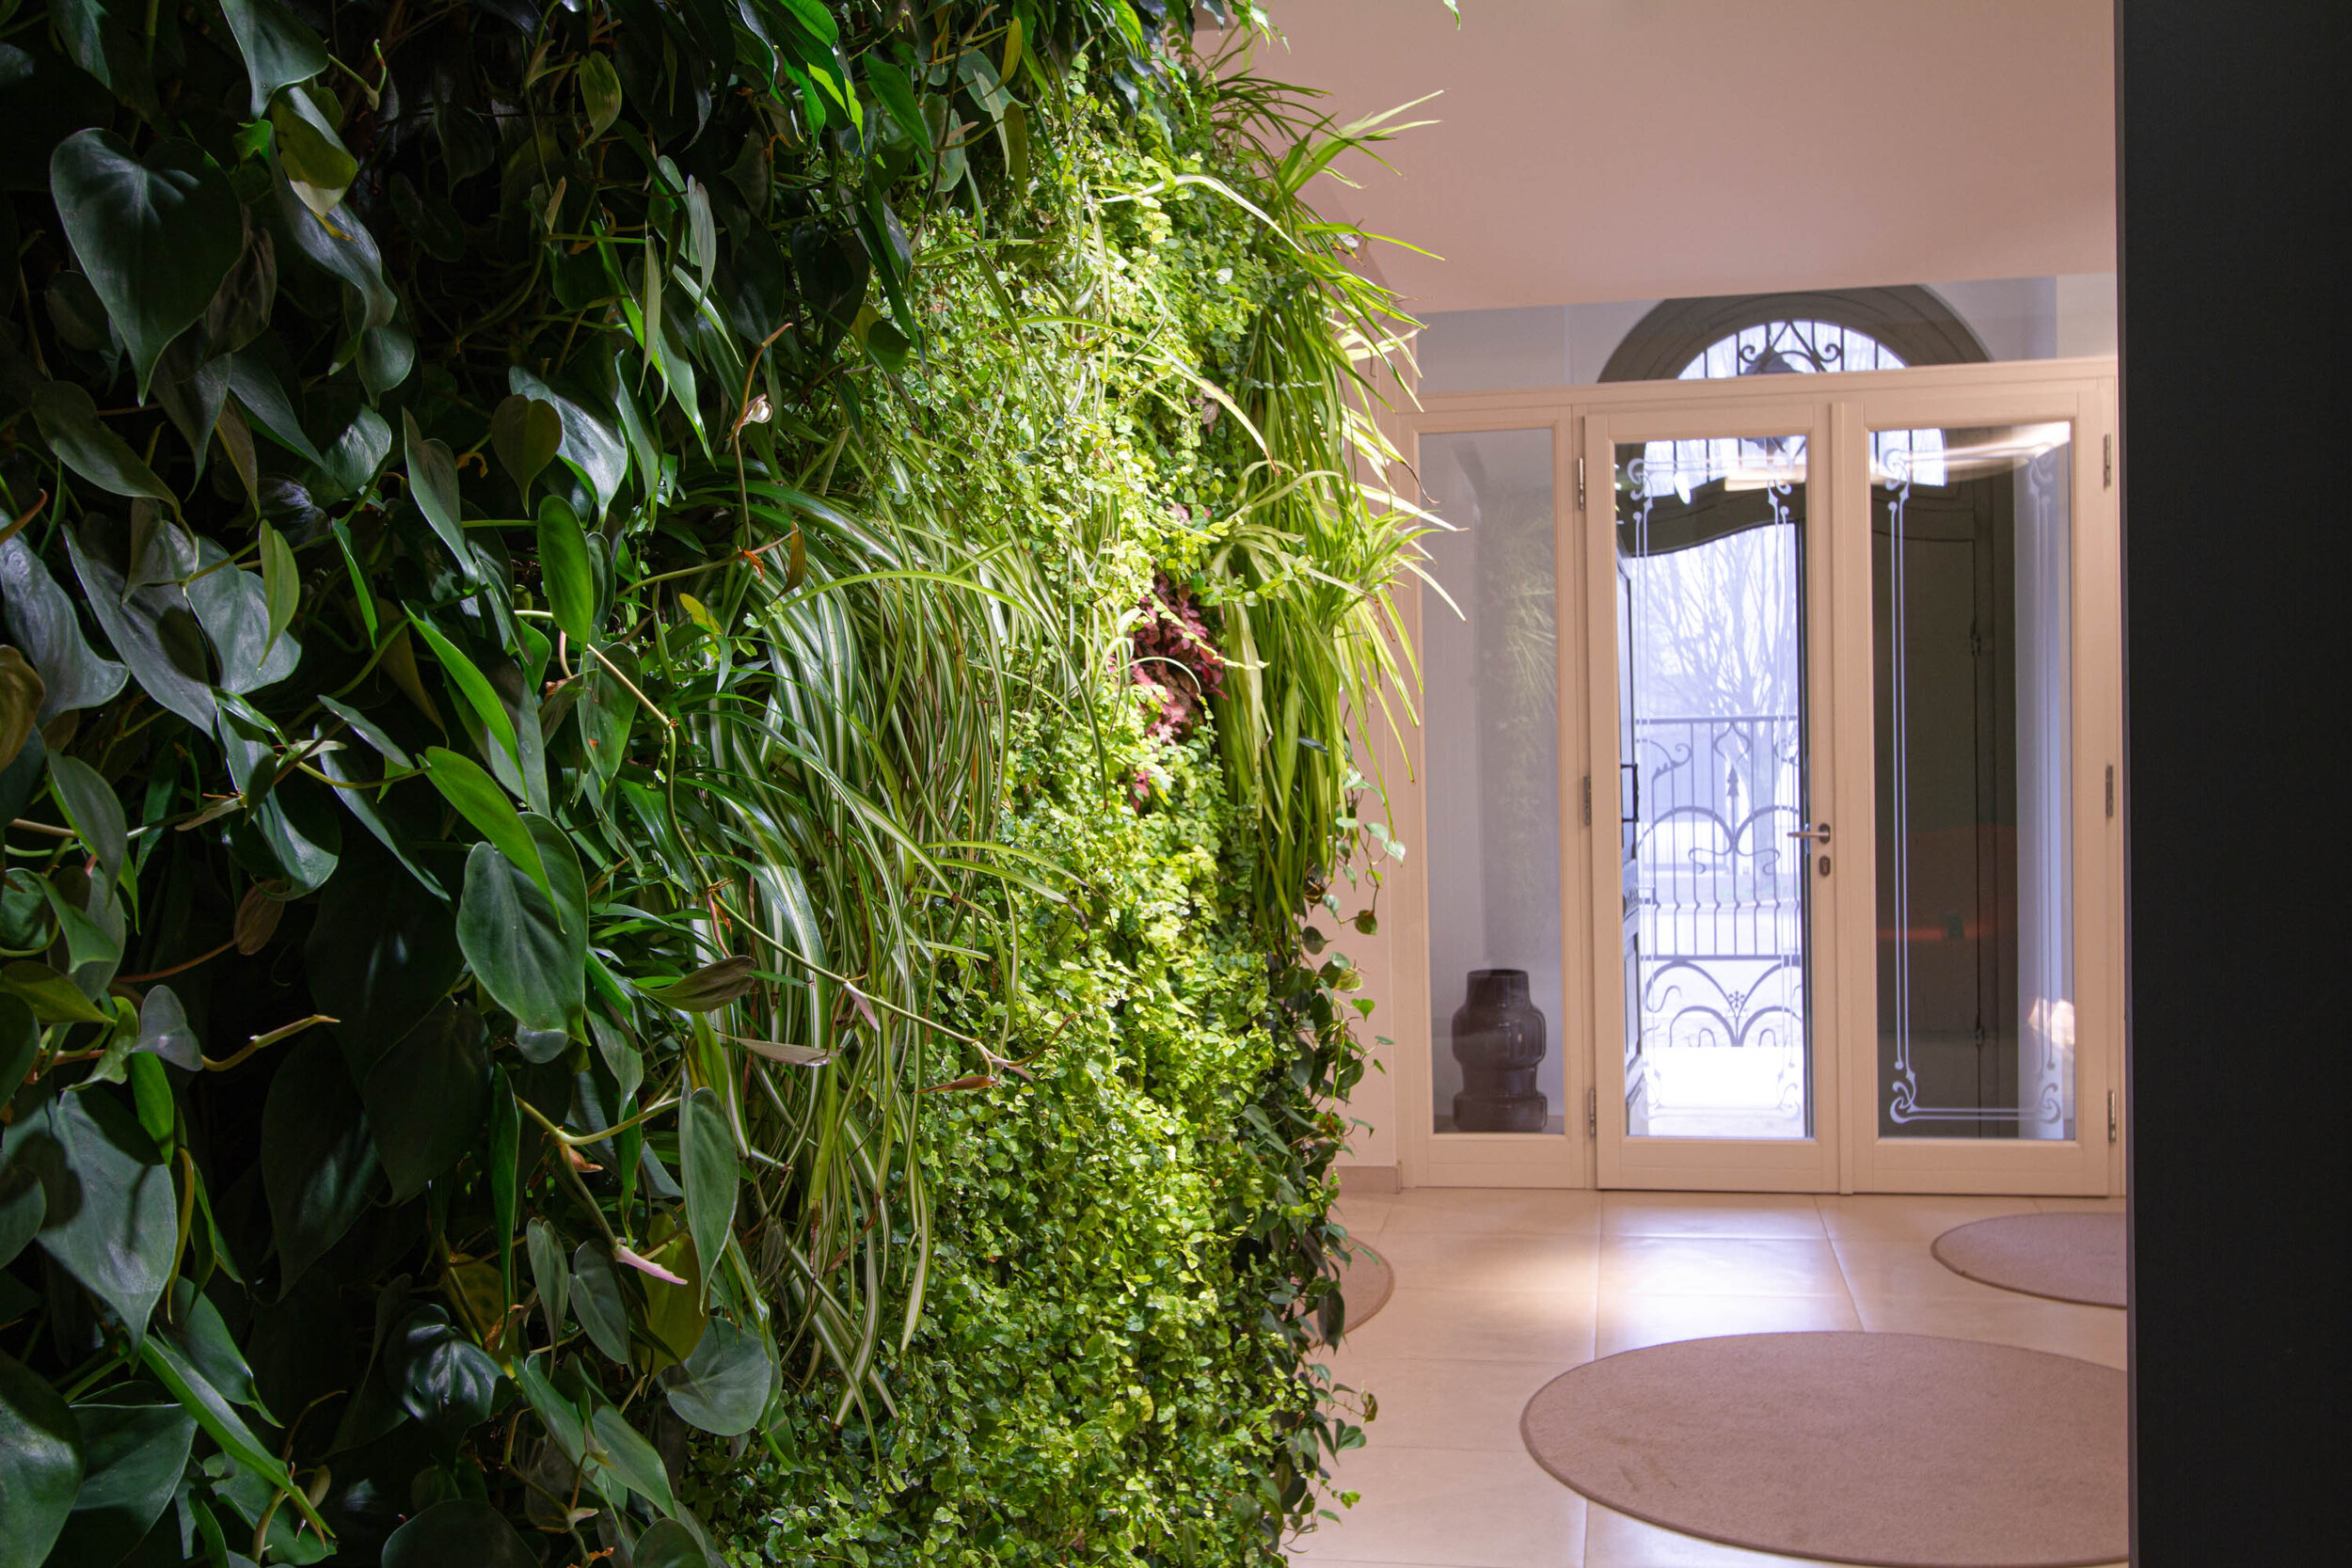 studio-cavazza-garden-vertical-wall-green-sundar-italia-008.JPG